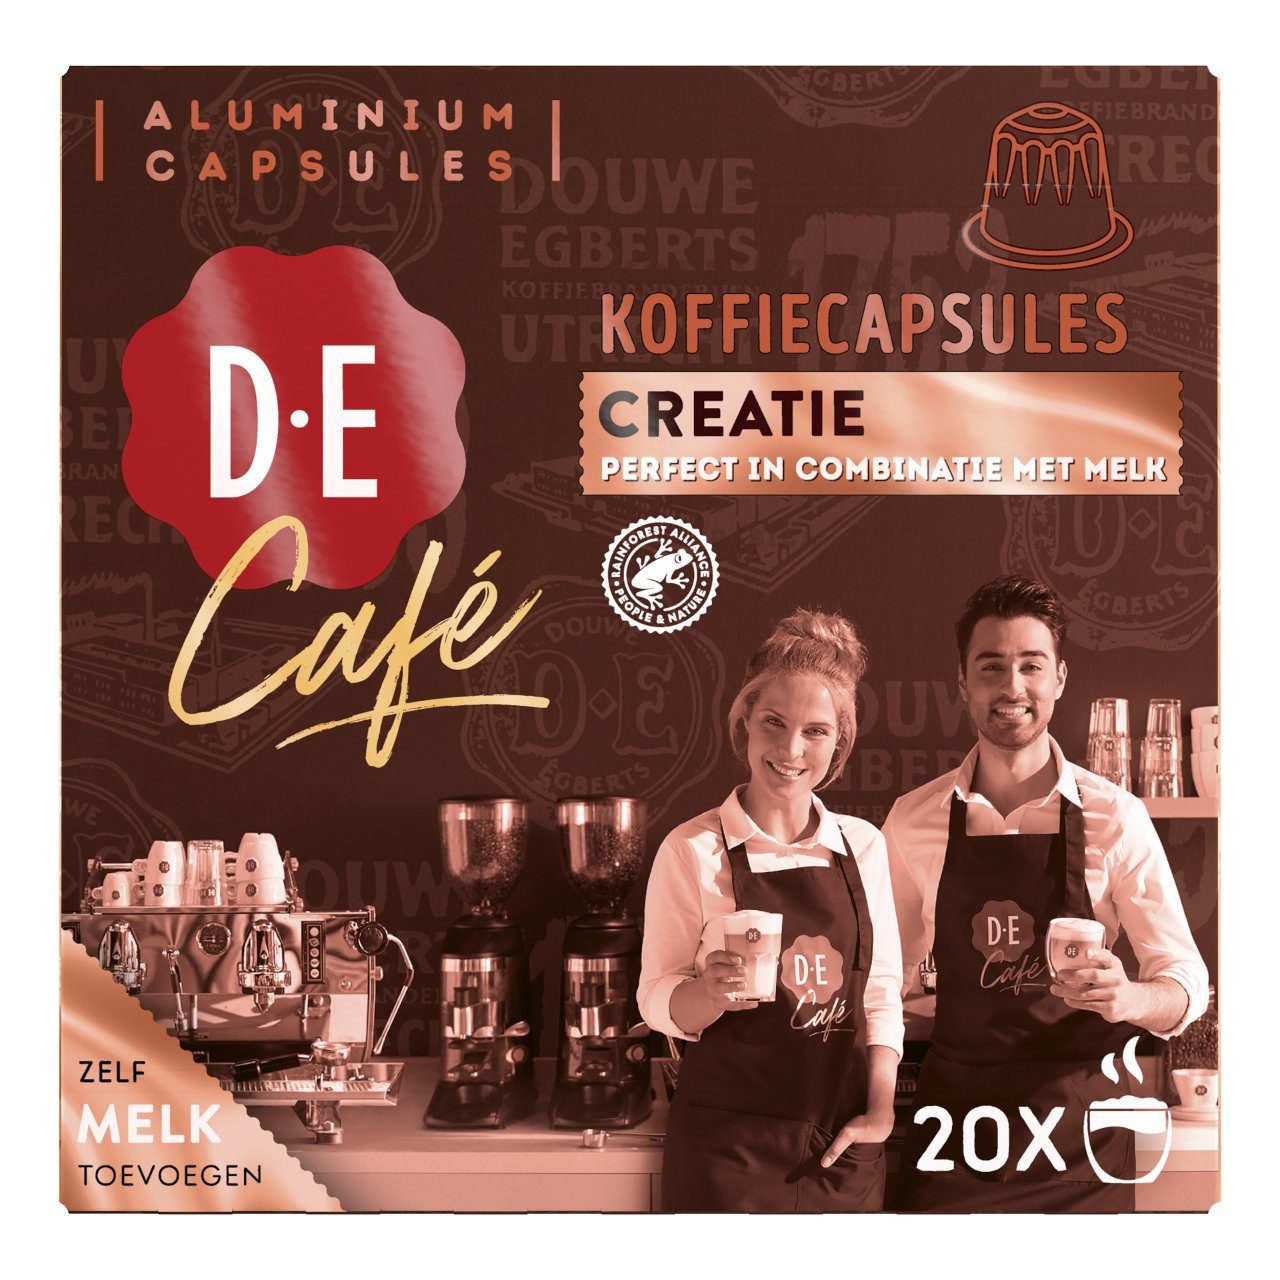 D.E café creatie capsules